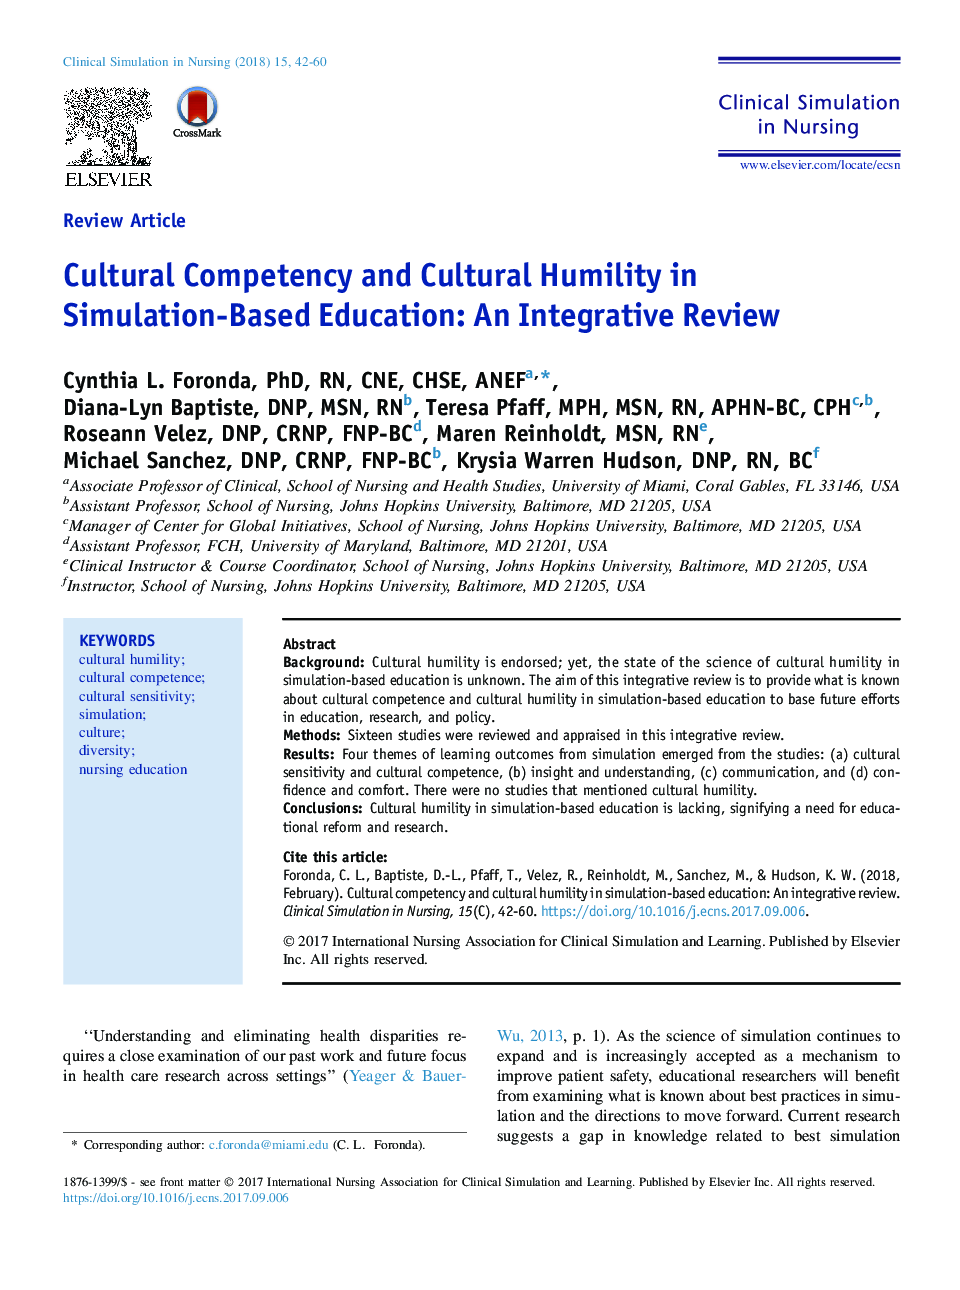 شایستگی فرهنگی و تردید فرهنگی در آموزش مبتنی بر شبیه سازی: یک مرور جامع 